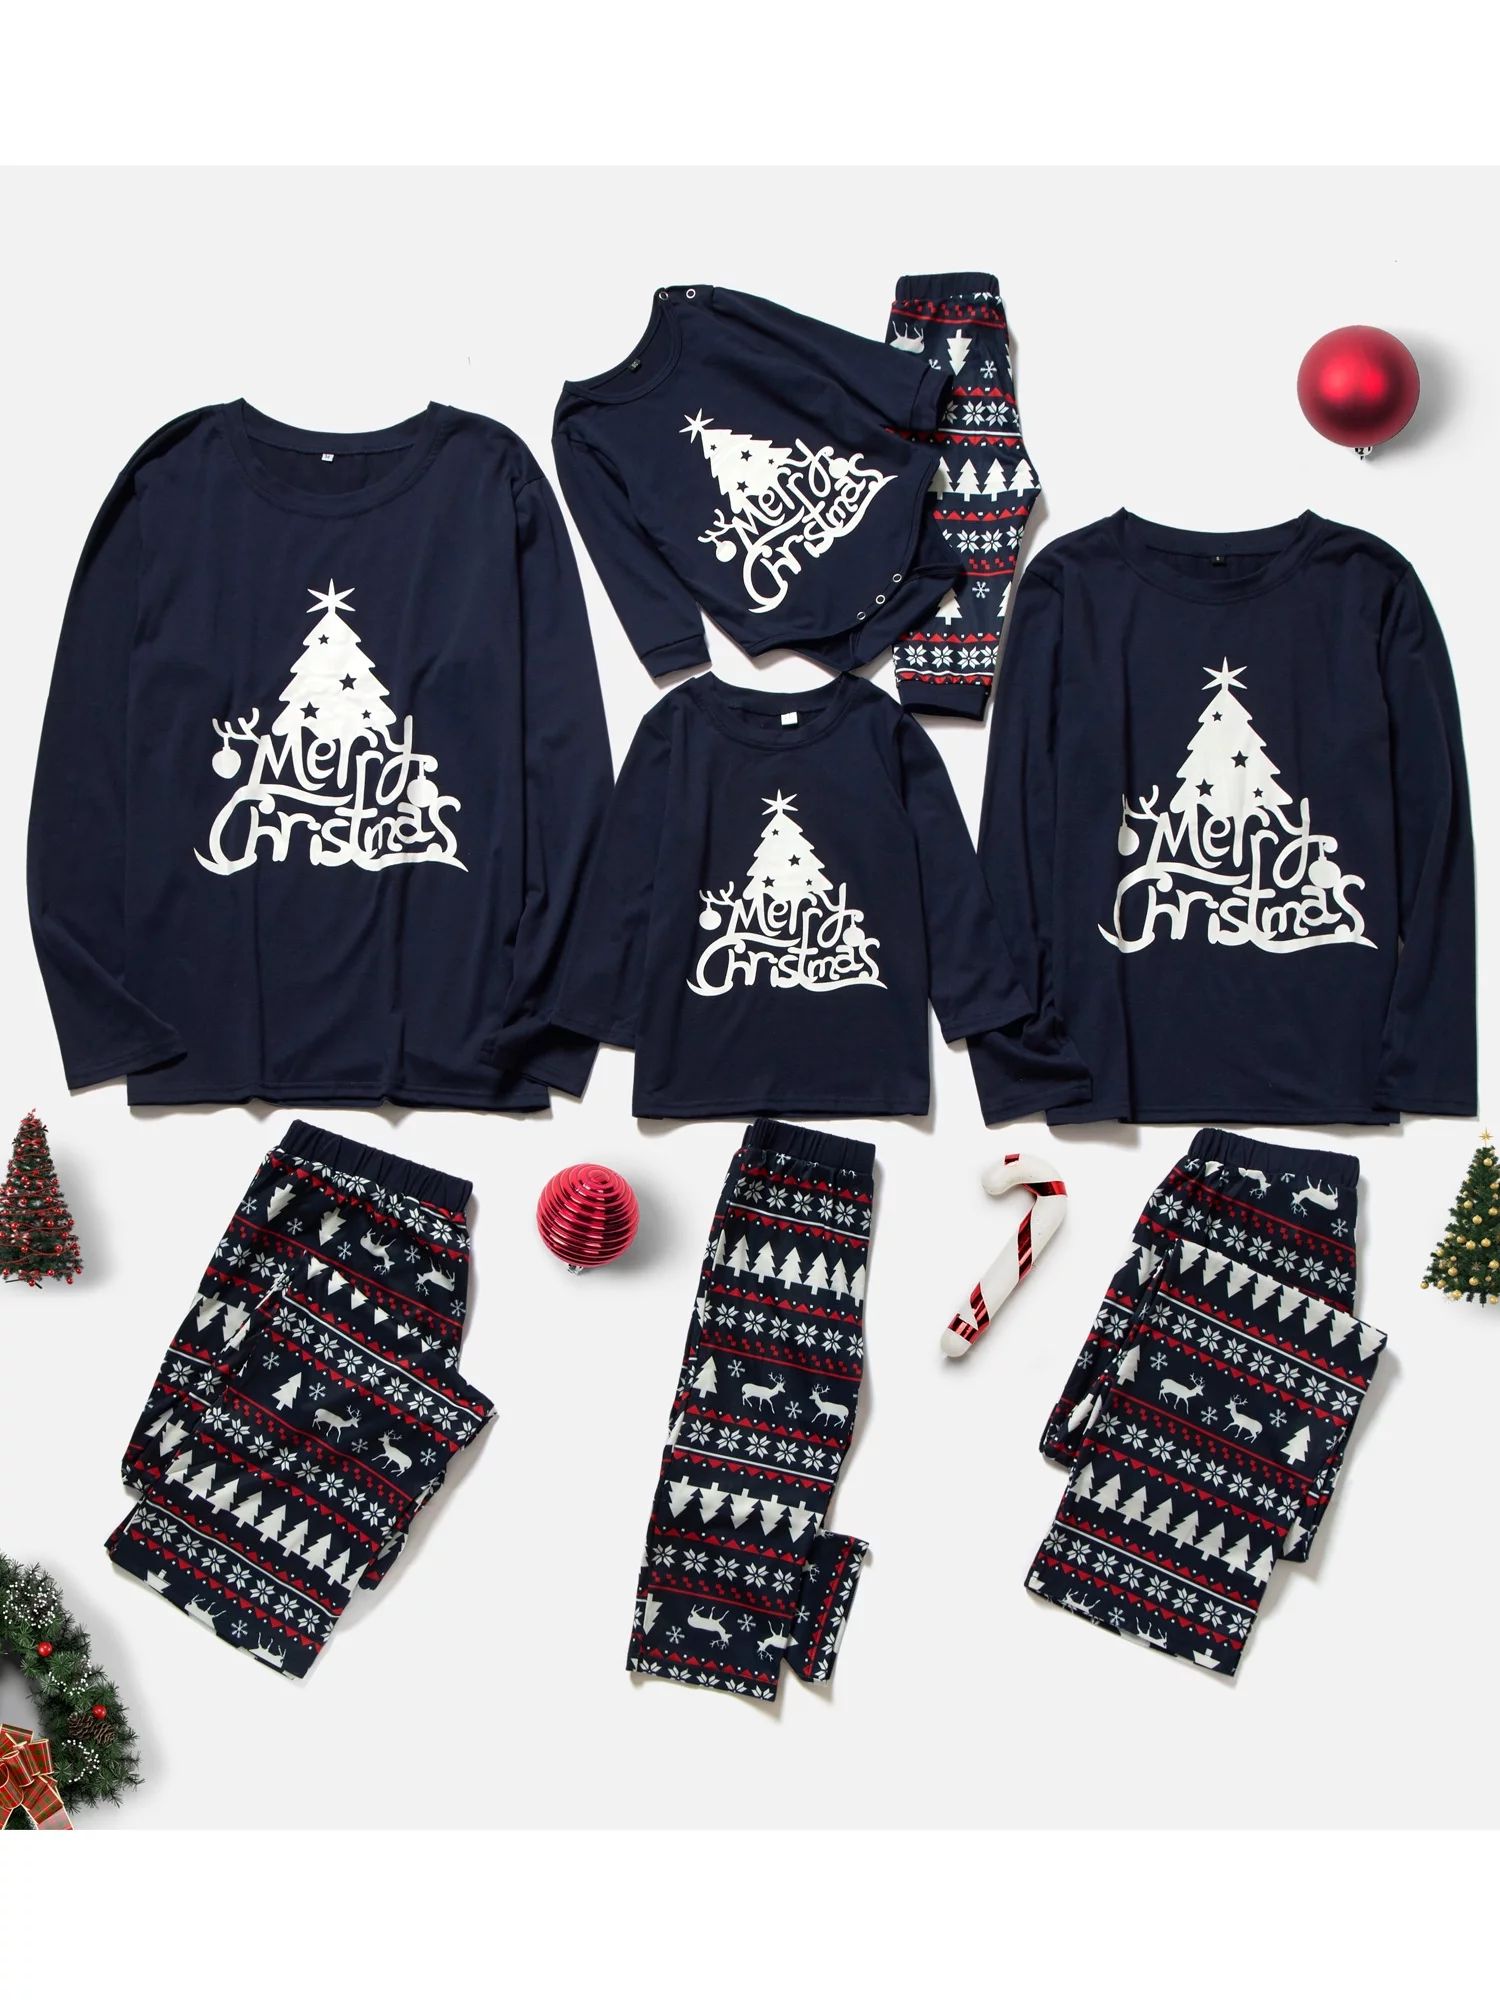 Thaisu Christmas Pajamas for Family Matching Pajamas Set Xmas Christmas tree Holiday Sleepwear | Walmart (US)